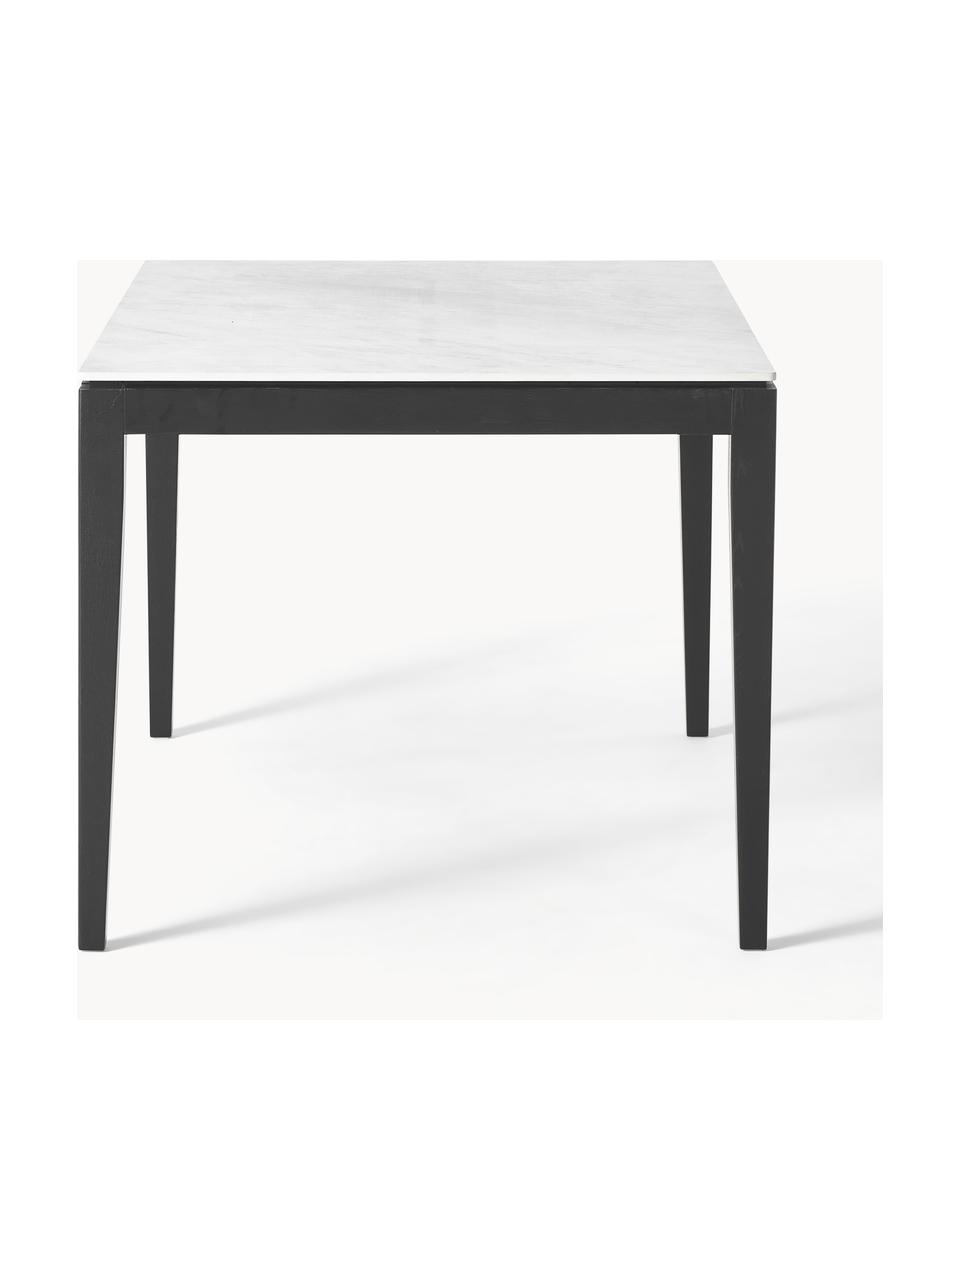 Table look marbre Jackson, tailles variées, Aspect marbre blanc, bois de chêne noir laqué, larg. 140 x prof. 90 cm